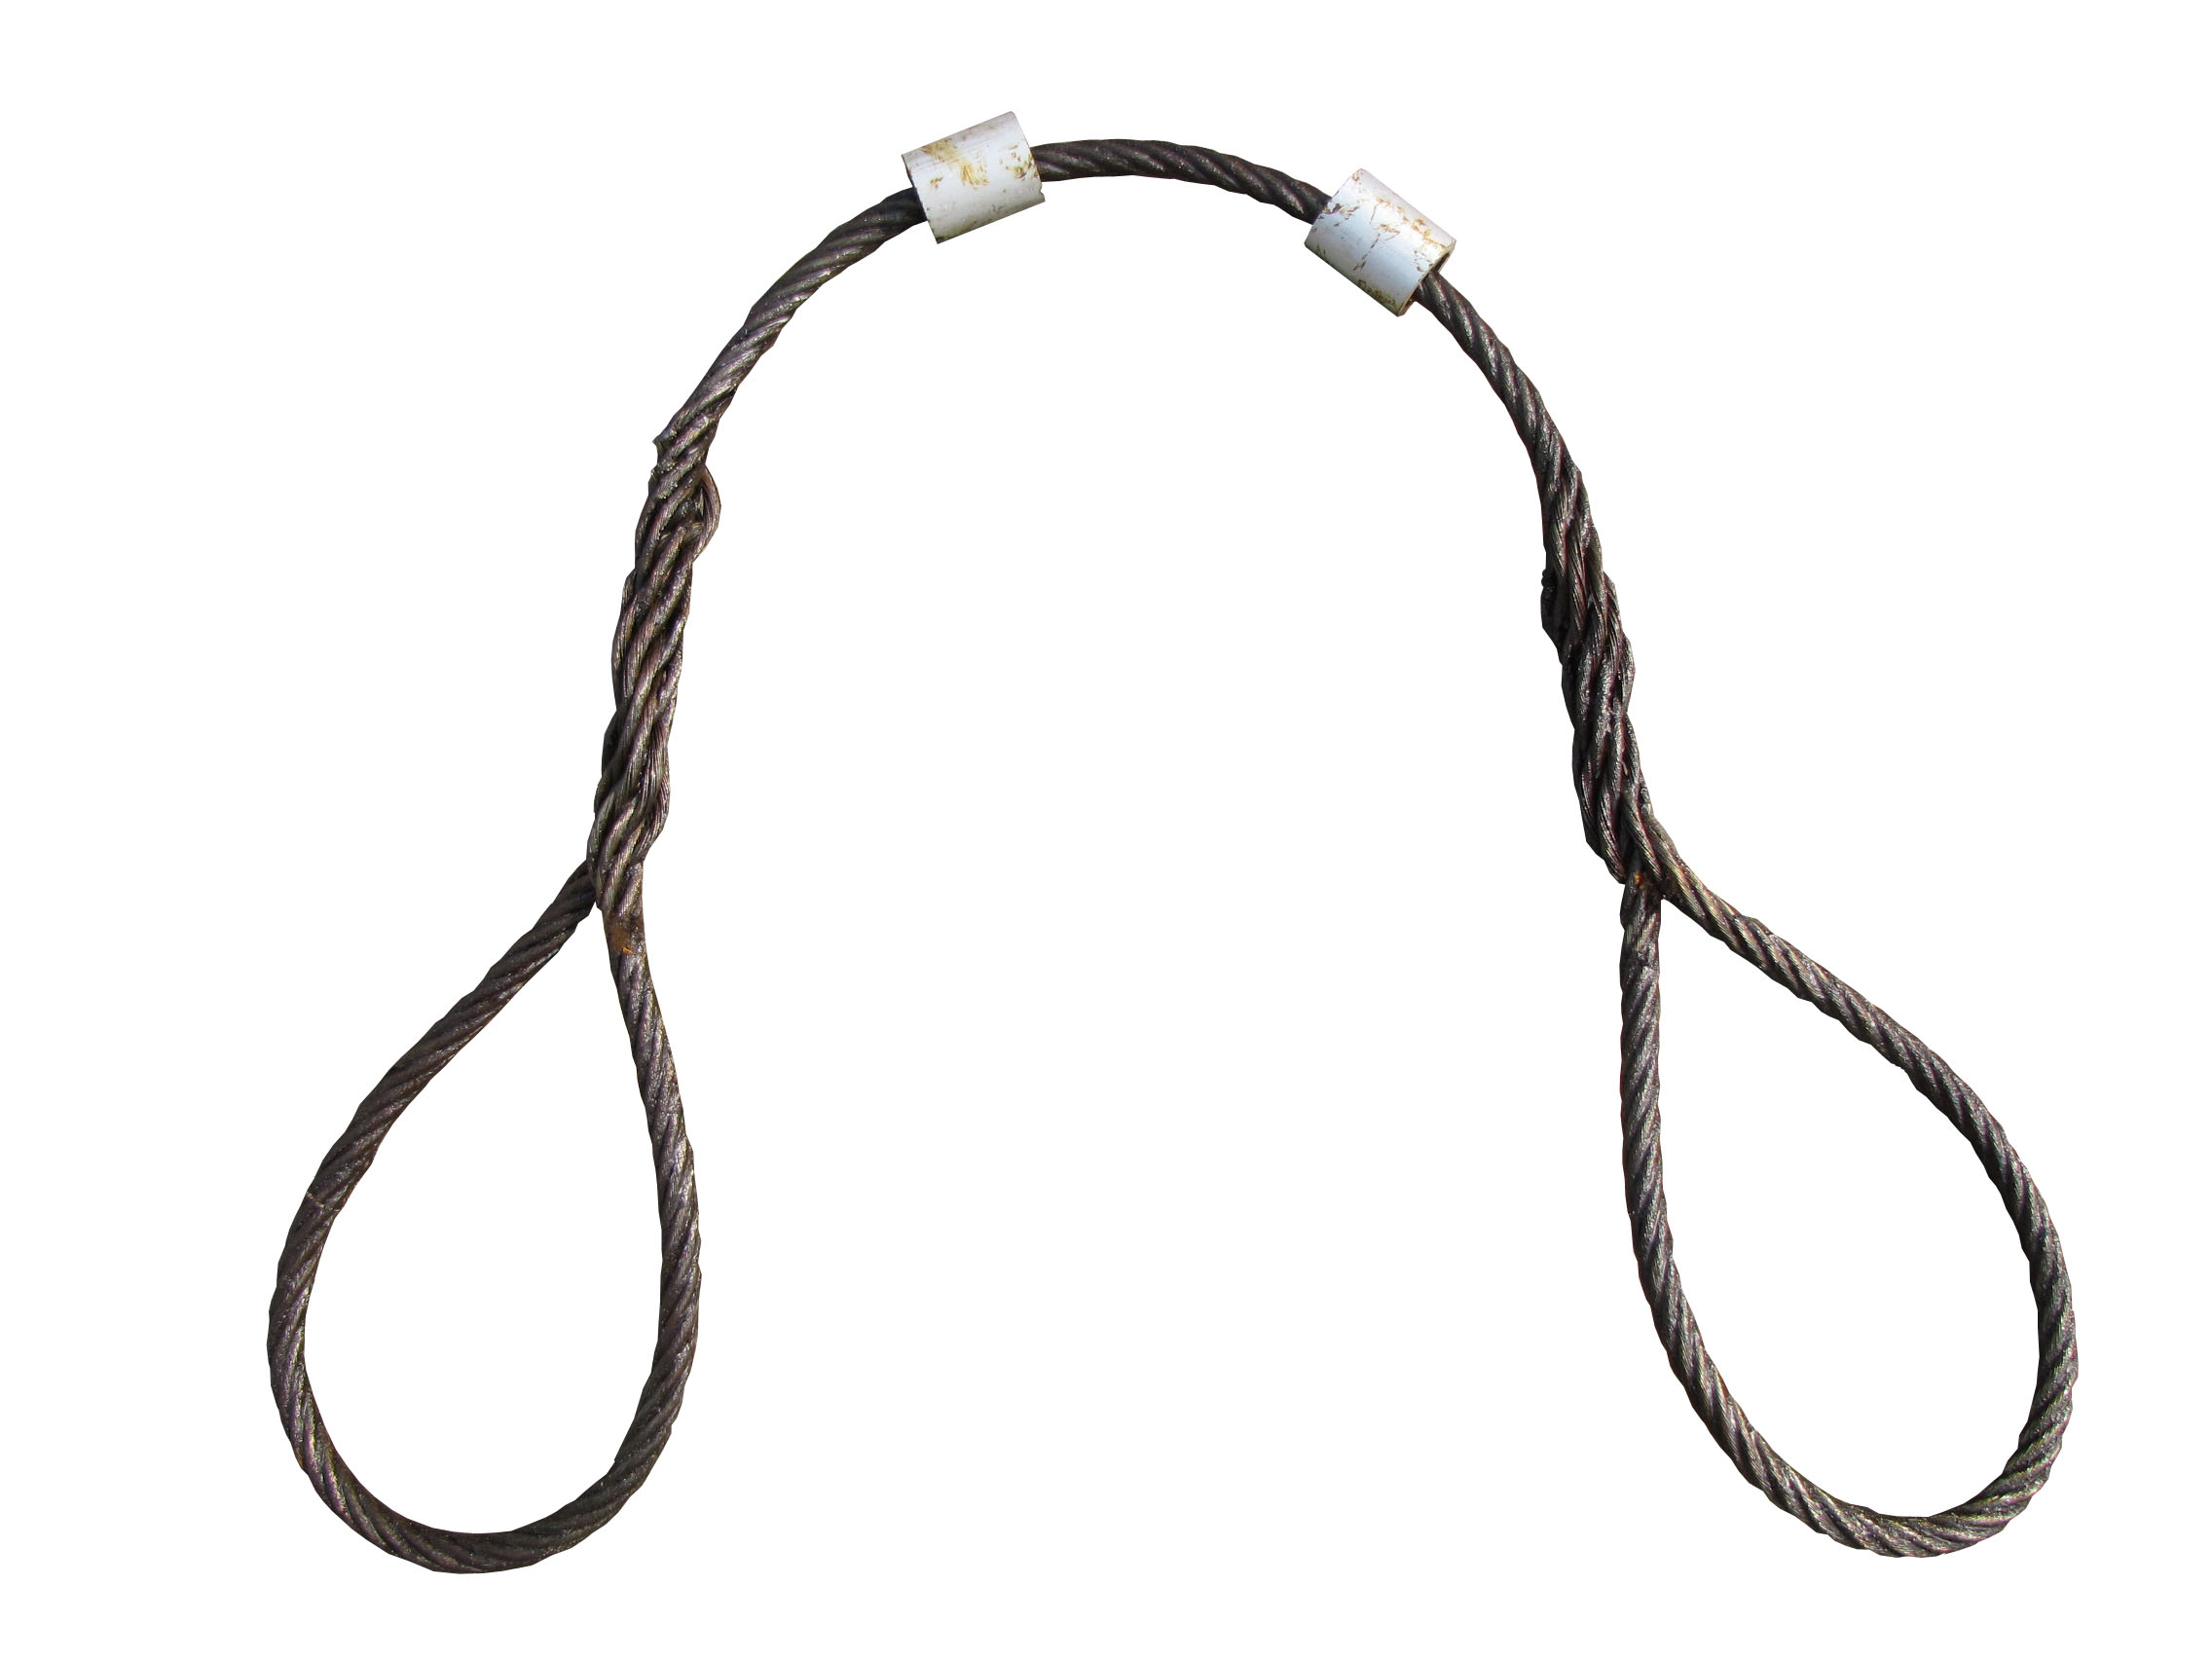 钢丝绳索具疲劳性能主要与循环加载次数和加载力有关